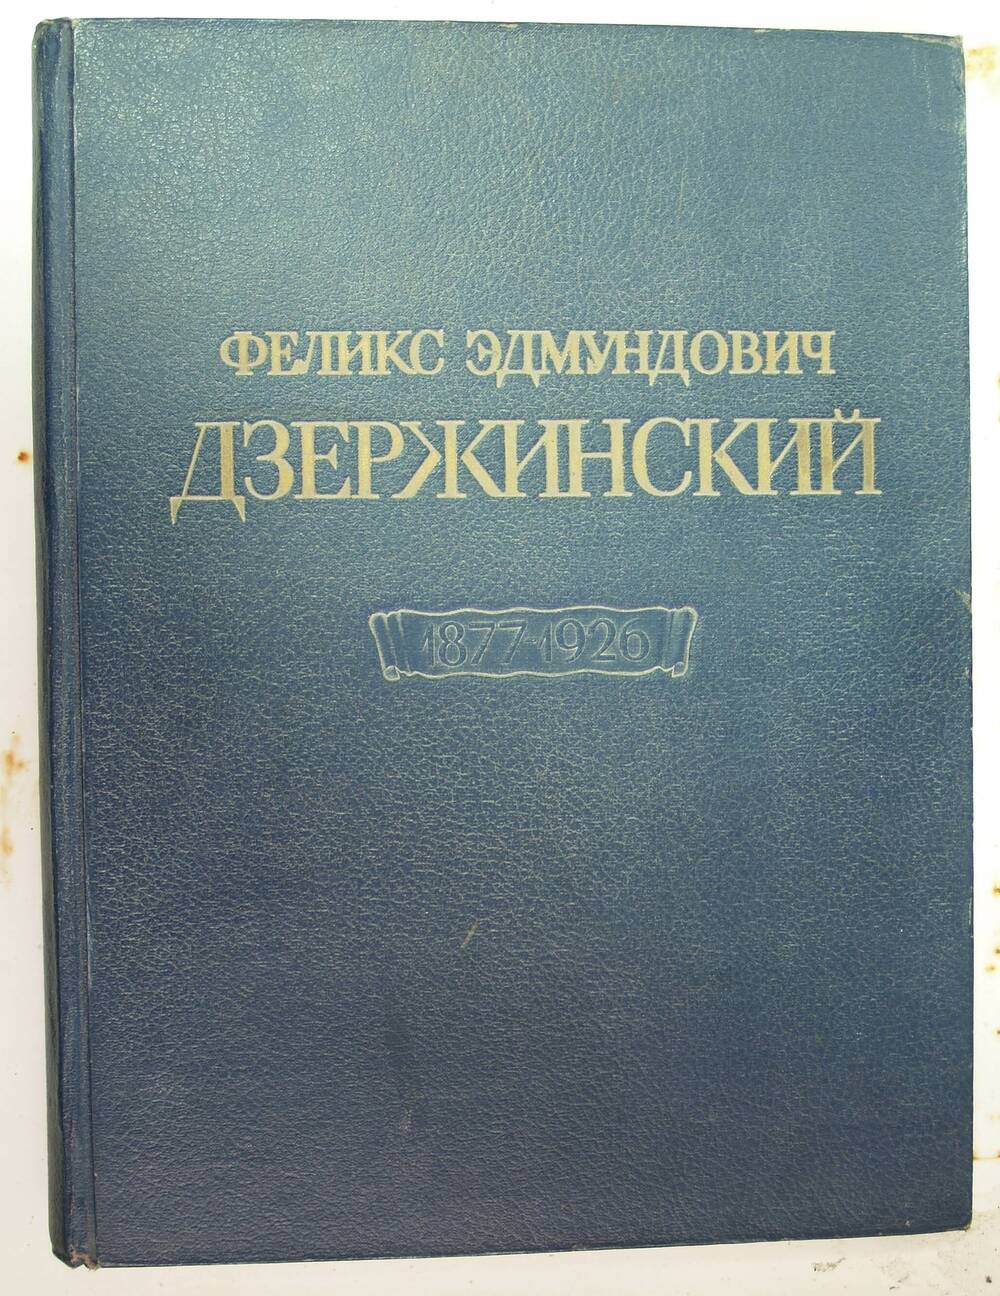 Книга-альбом  Феликс Эдмундович Дзержинский. 1877-1926.